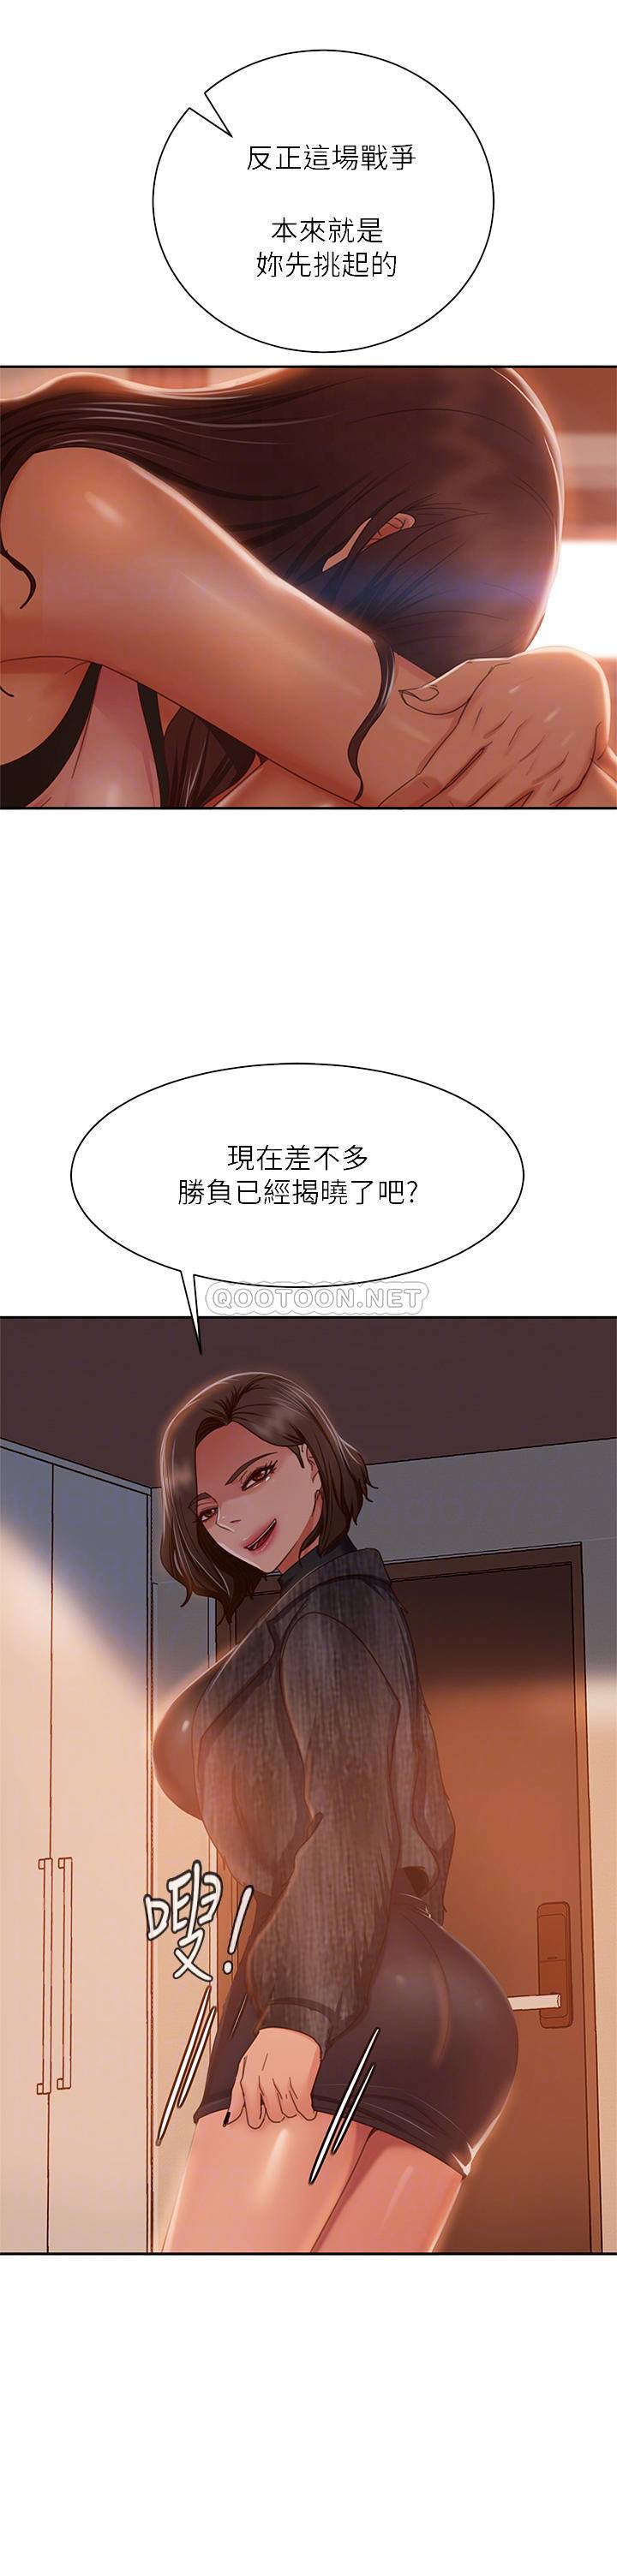 韩国污漫画 不良女房客 第37话你是房东的女朋友? 16